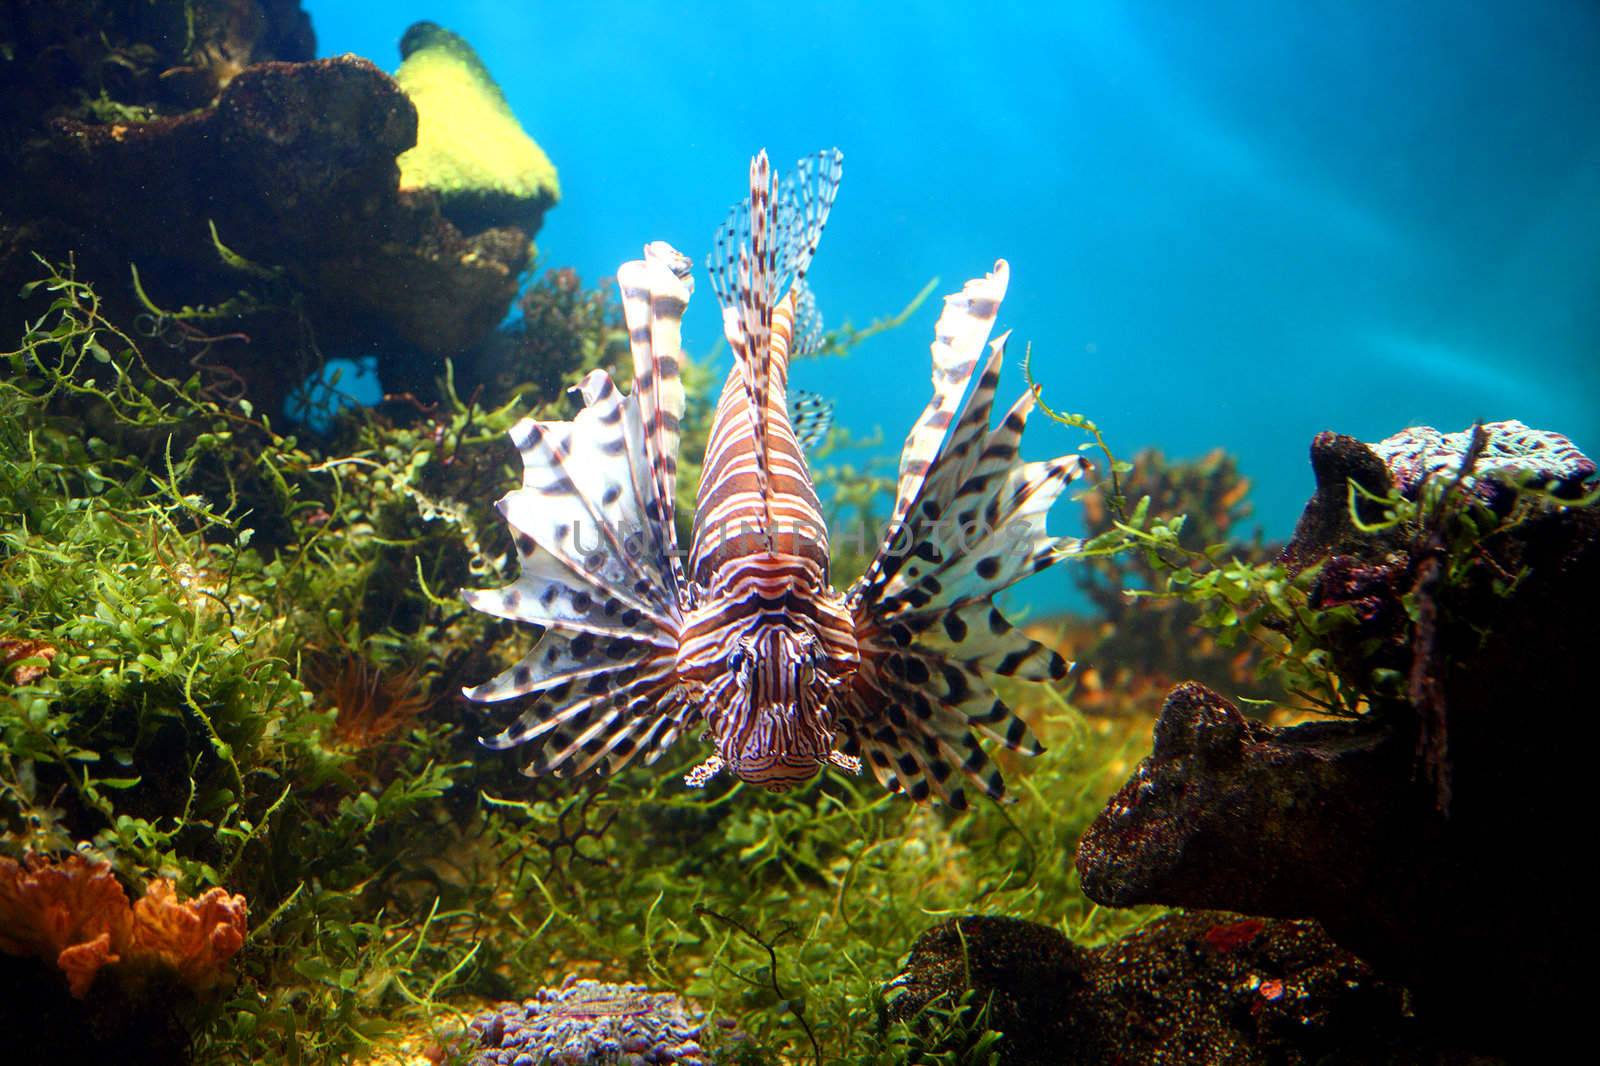 lionfish underwater in tropical aquarium